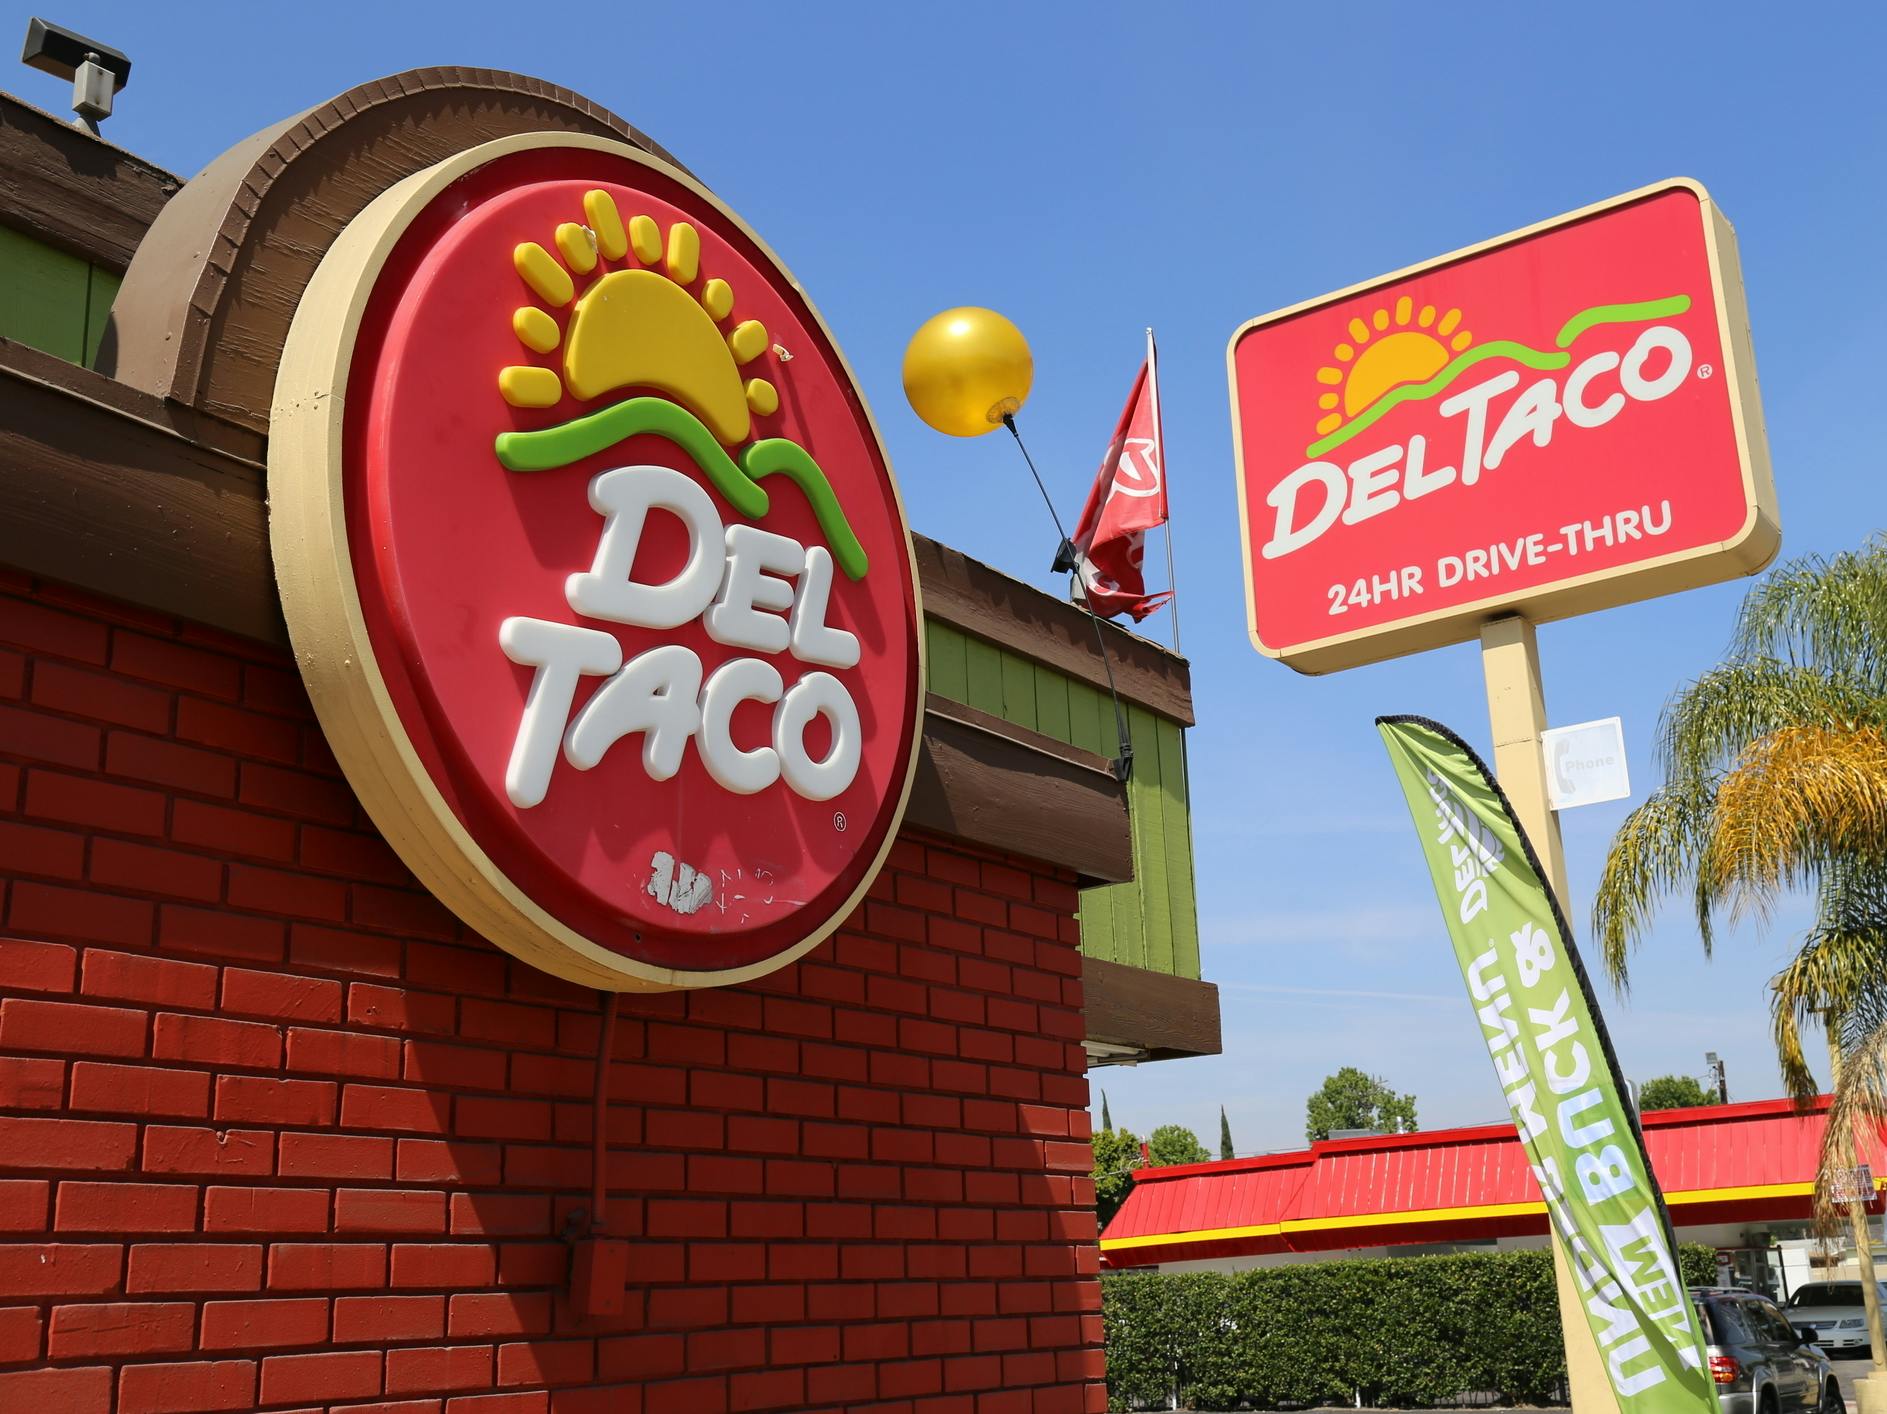 A Del Taco sign and restaurant exterior.